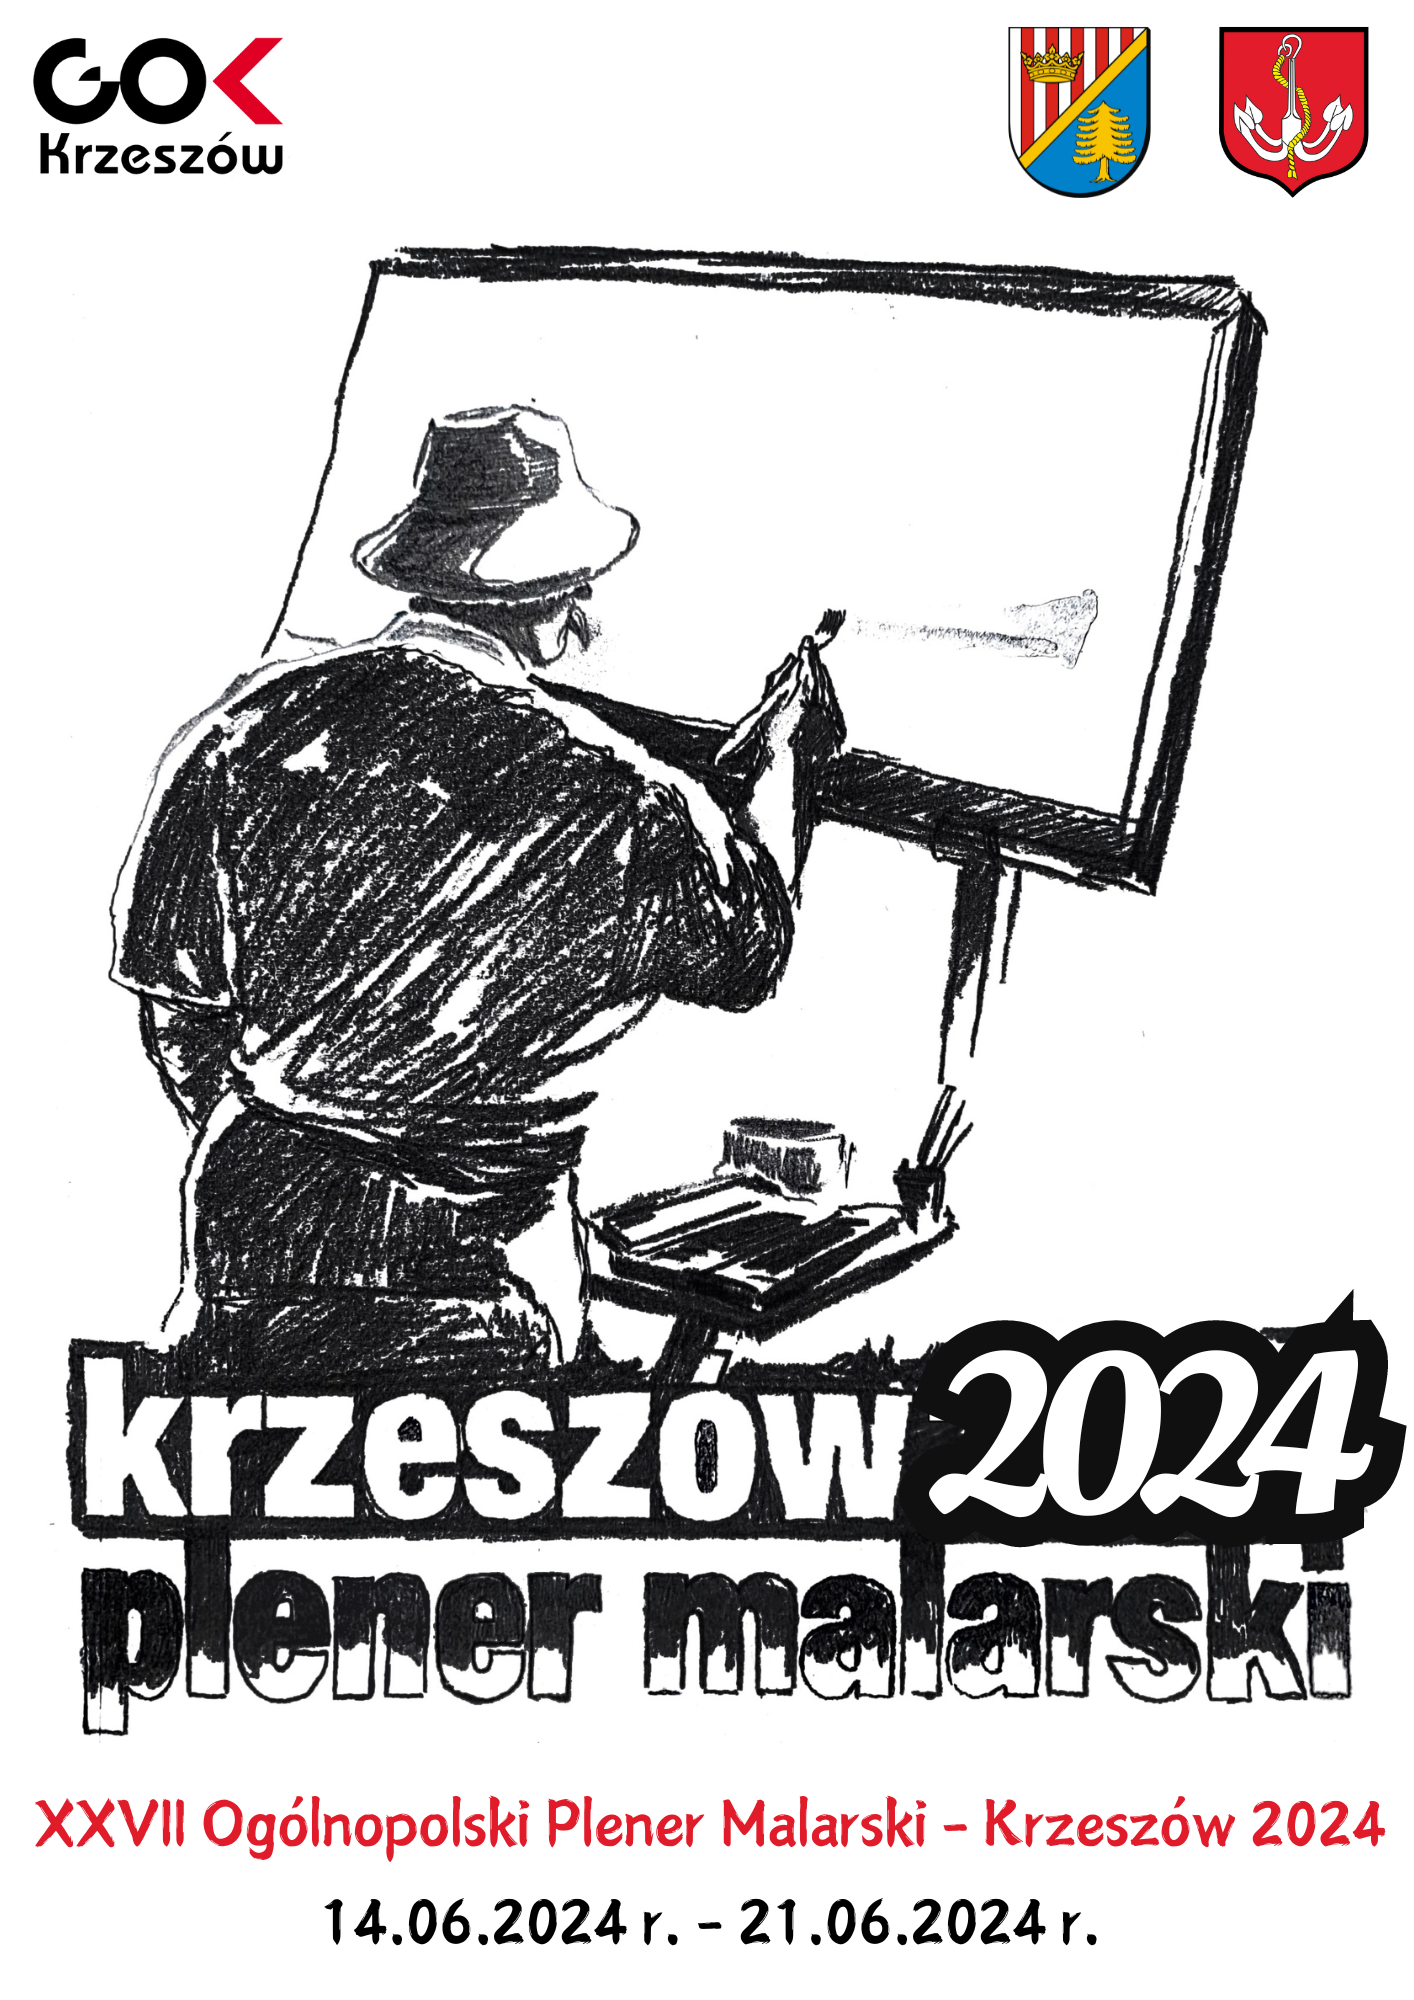 XXVII Ogólnopolski Plener Malarski – Krzeszów 2024